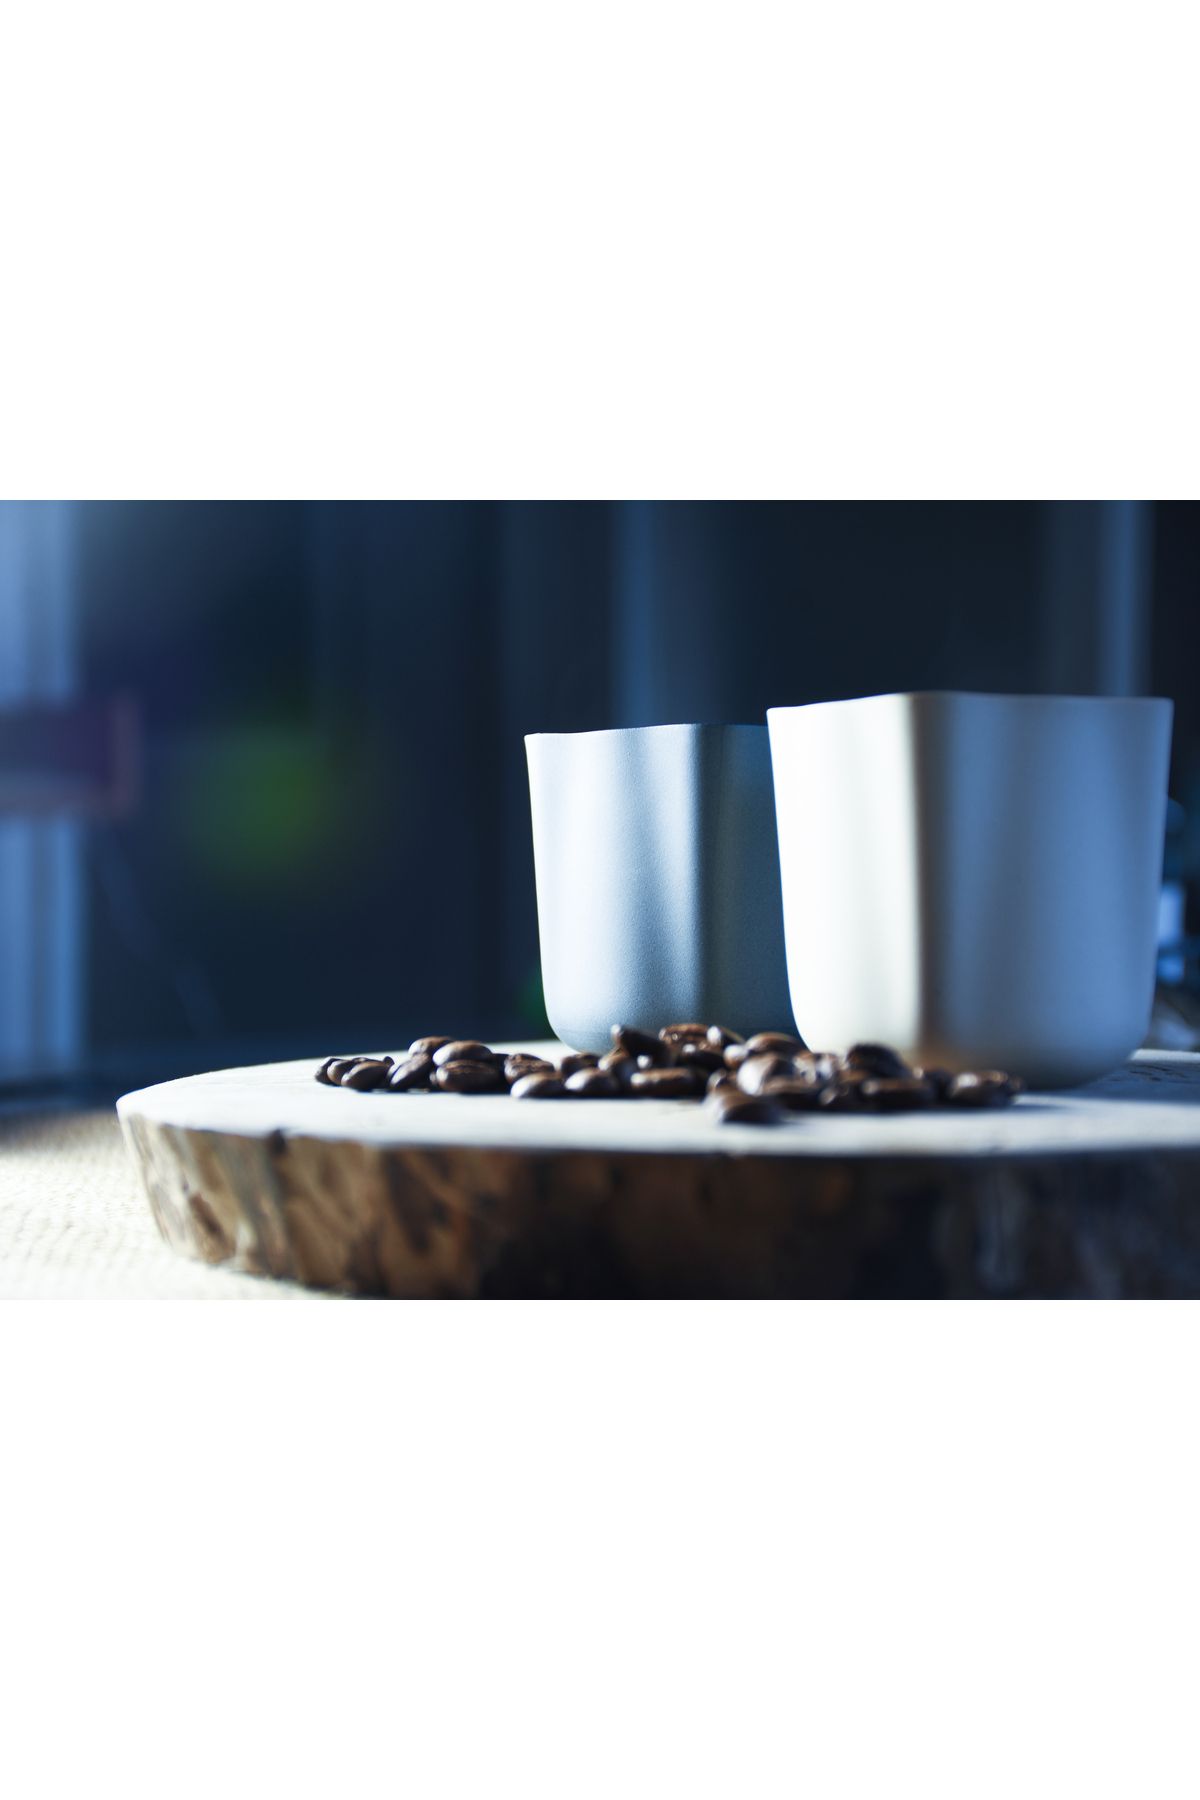 noonporcelain Flora Kahve Bardağı - El Yapımı Fransız Porselen(limoges) Bardak Kupa Kahve Bardağı Espresso